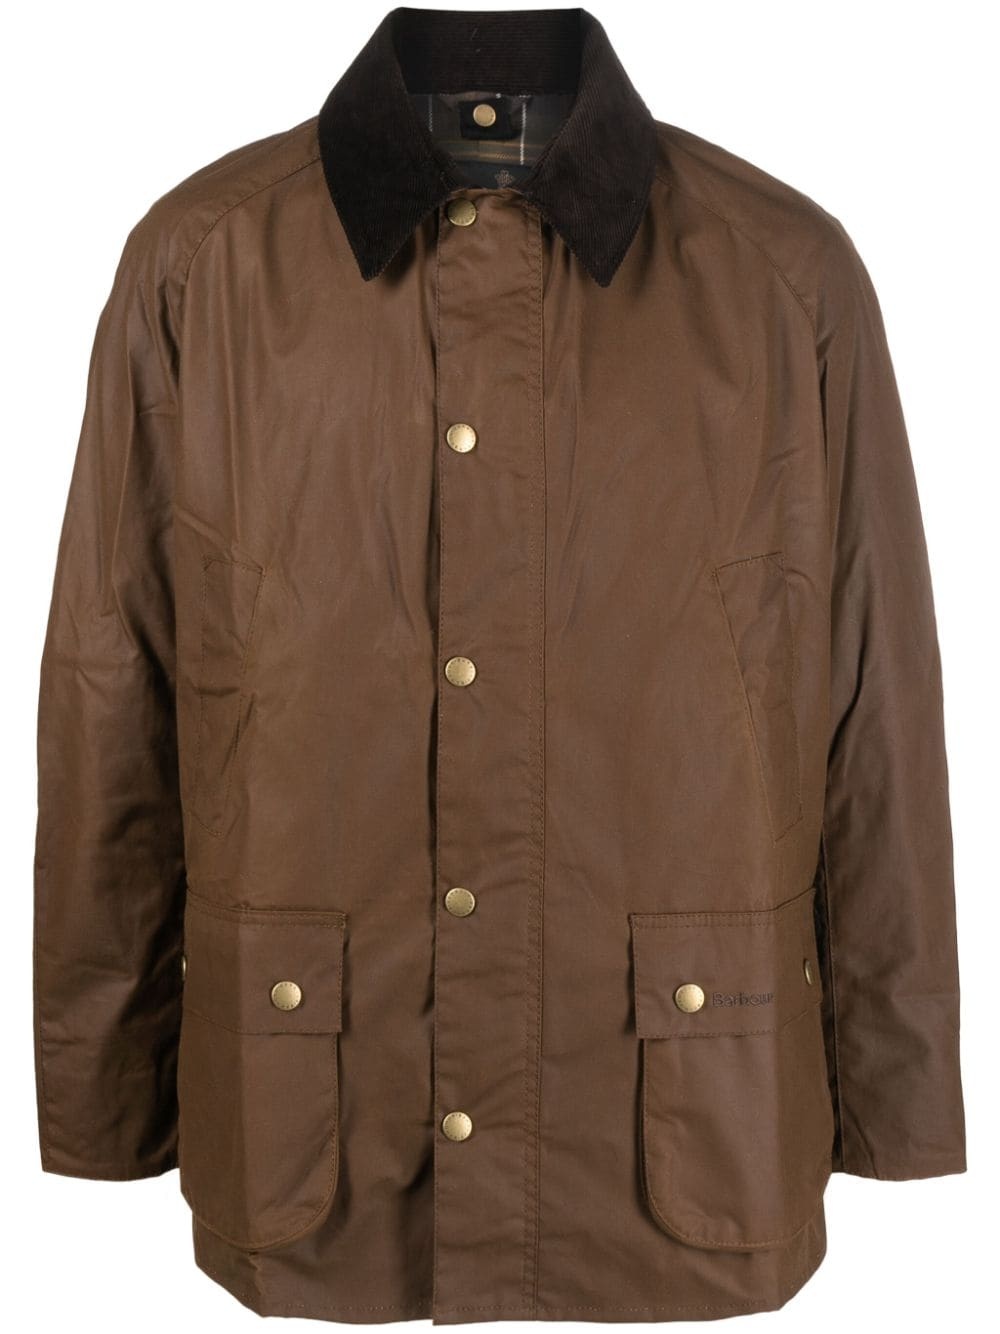 Beaufort press-stud wax jacket - 1